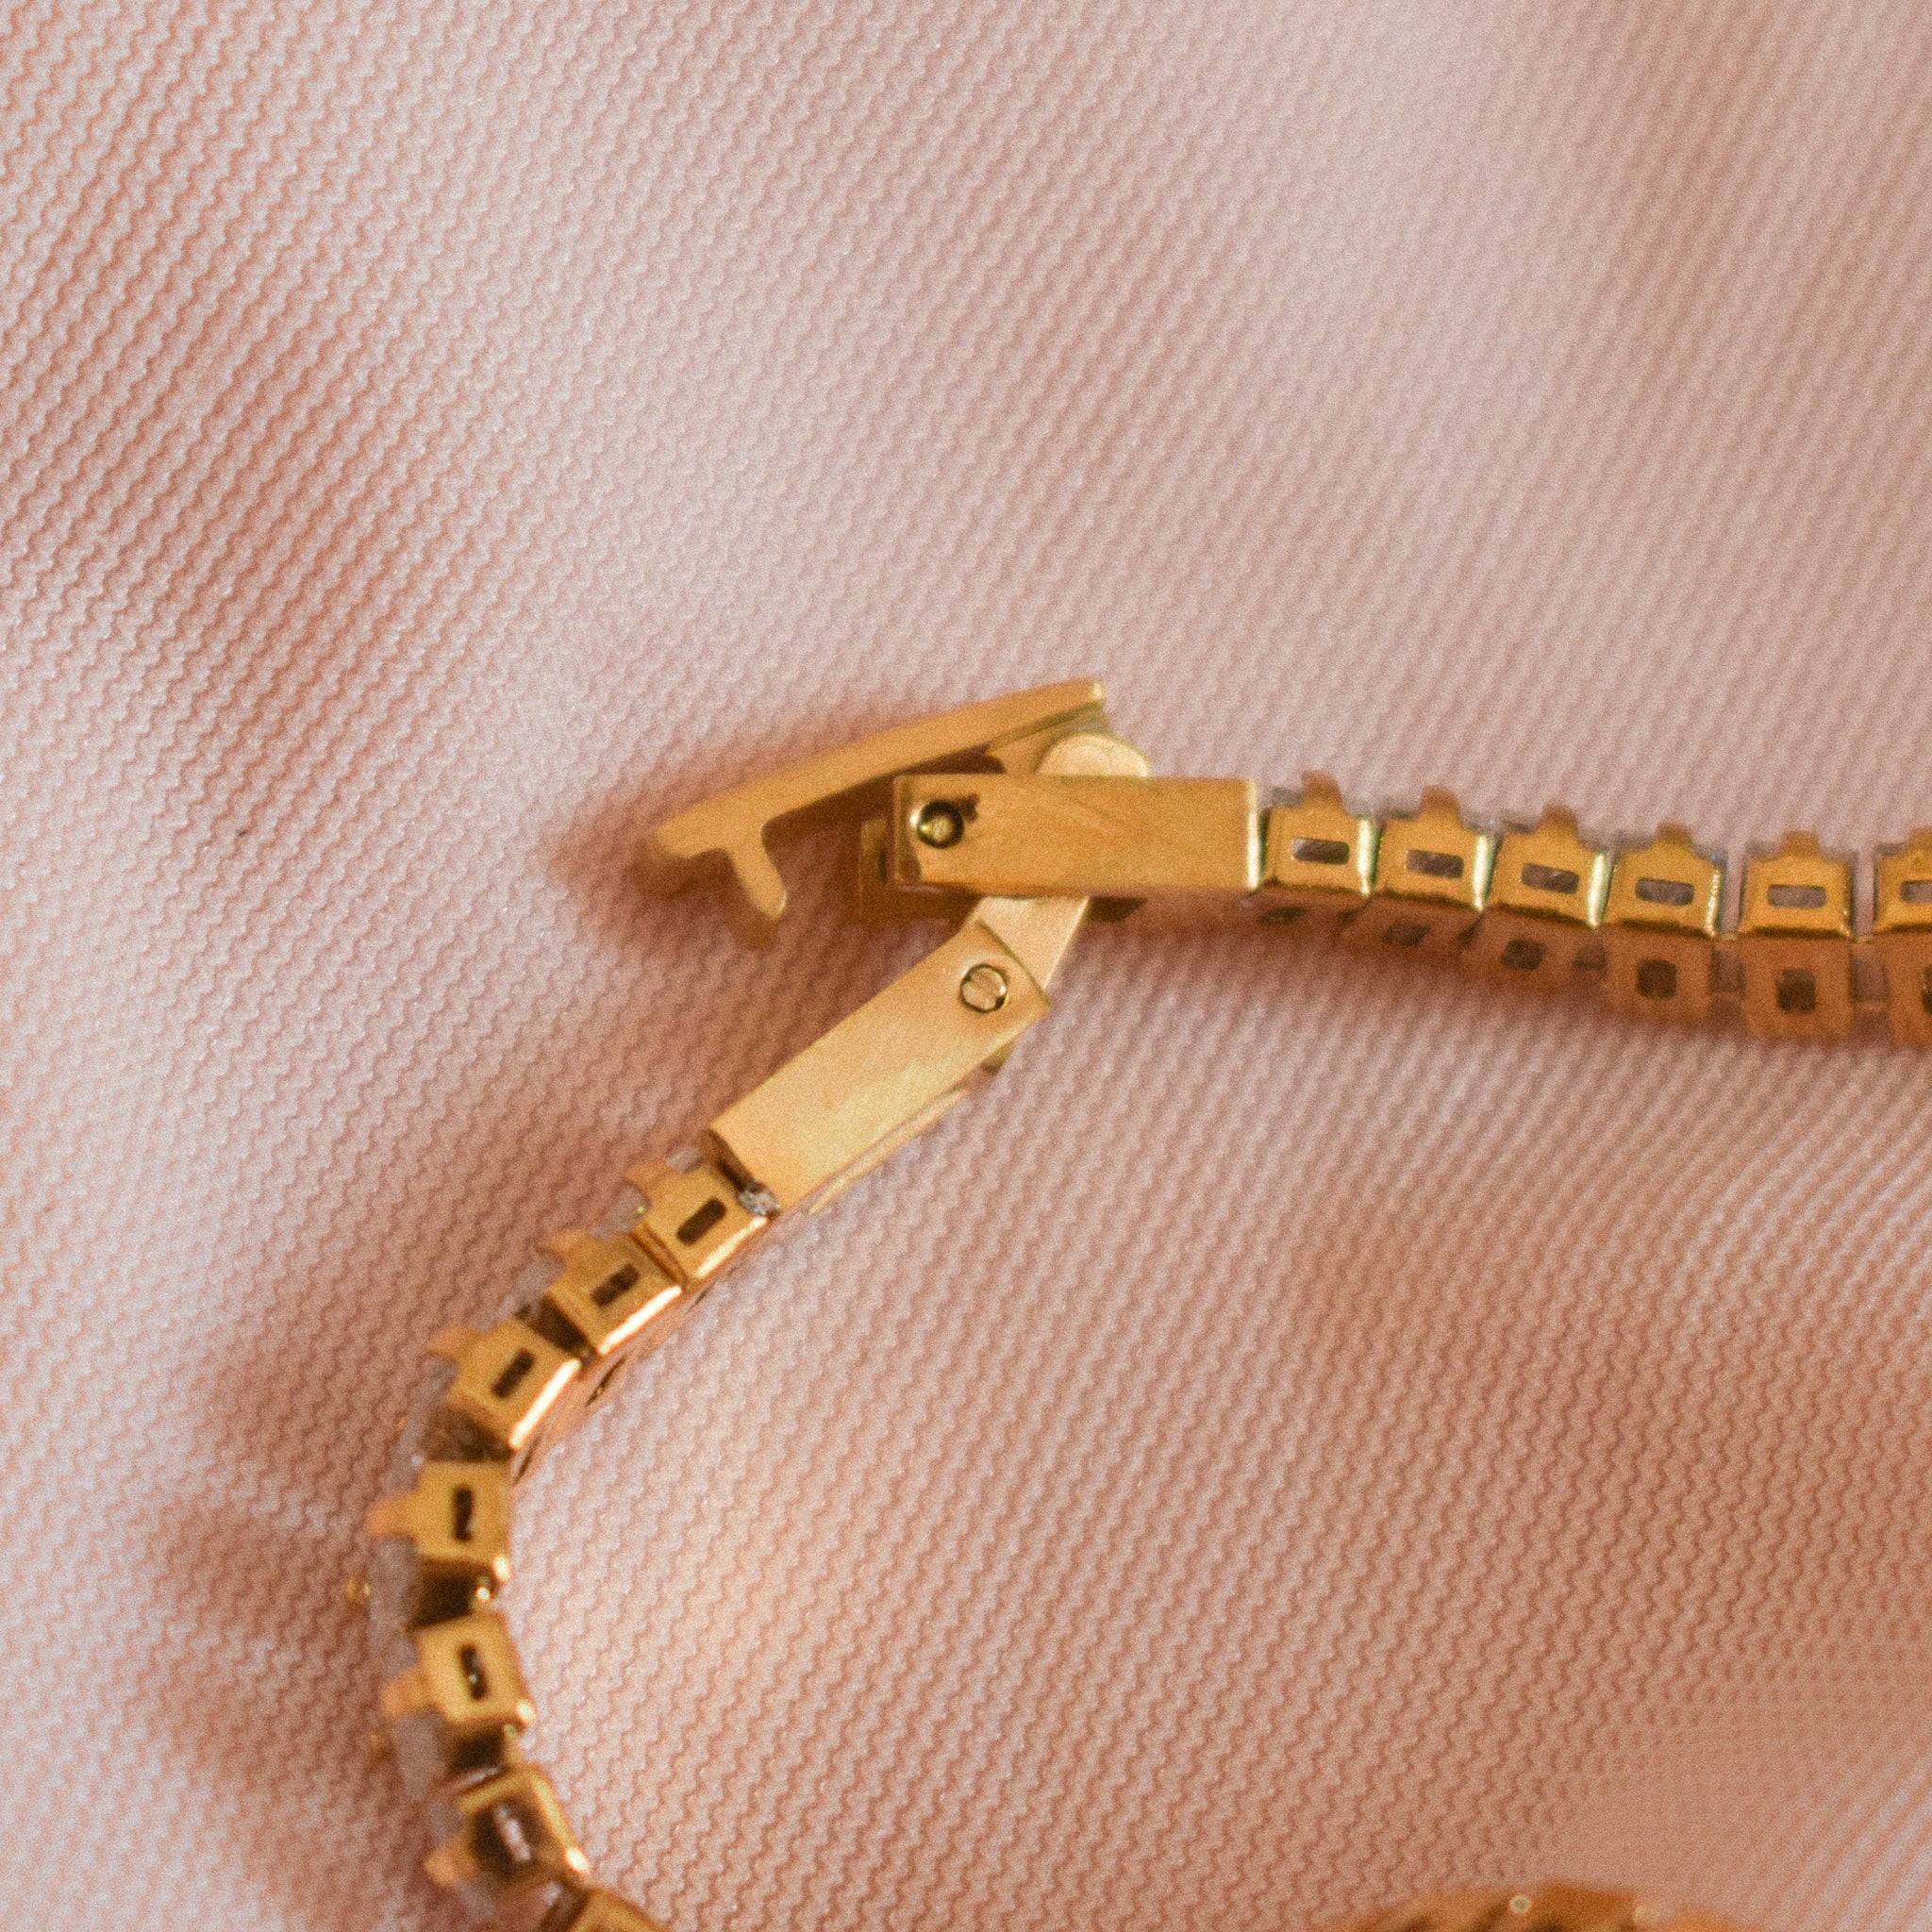 “Blythe” Gemstone Bracelet